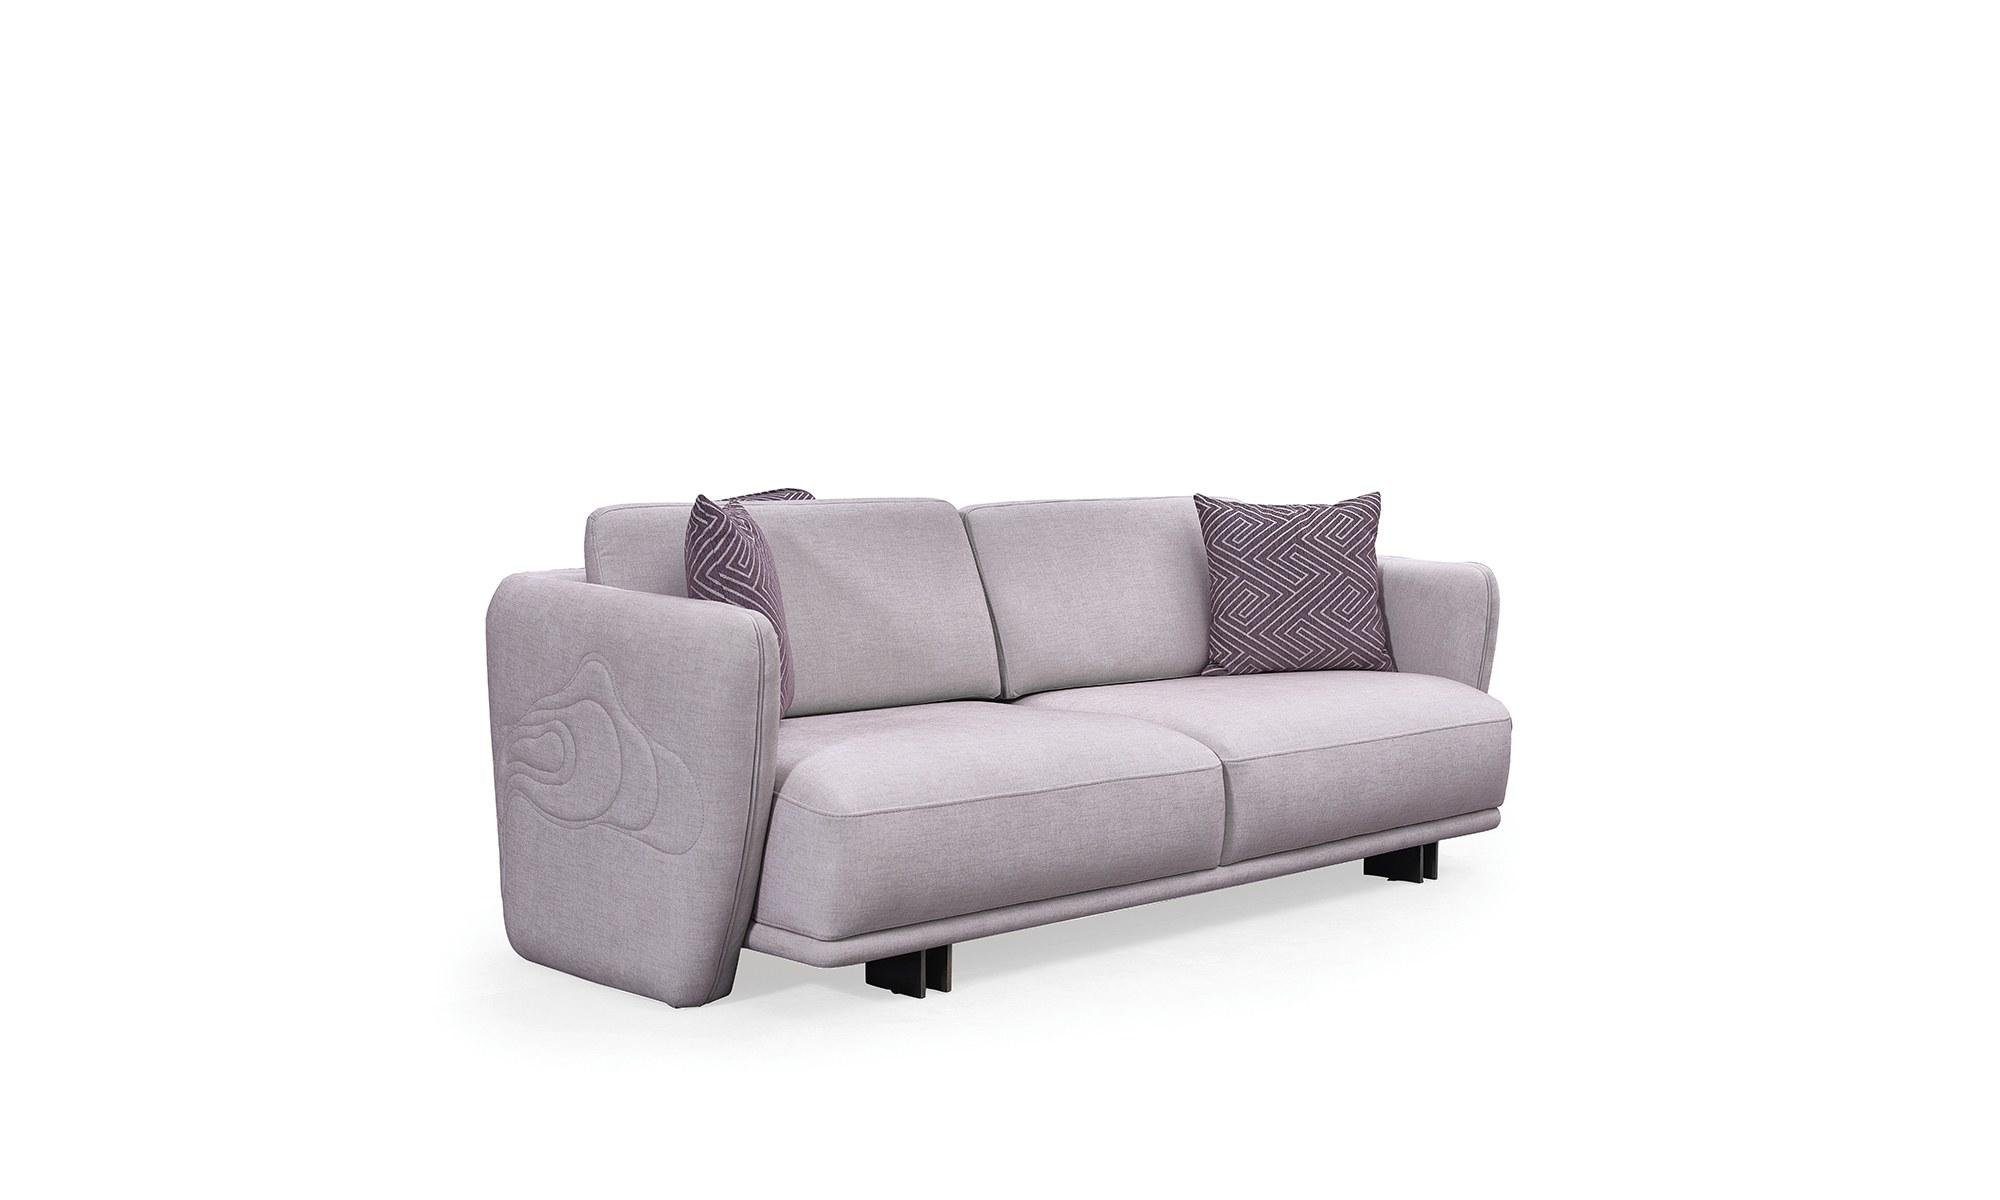 JVmoebel 3-Sitzer Modern Dreisitzer Couch Sofa 3 Sitzer Grau Polstersofa Design, 1 Teile, Made in Europa